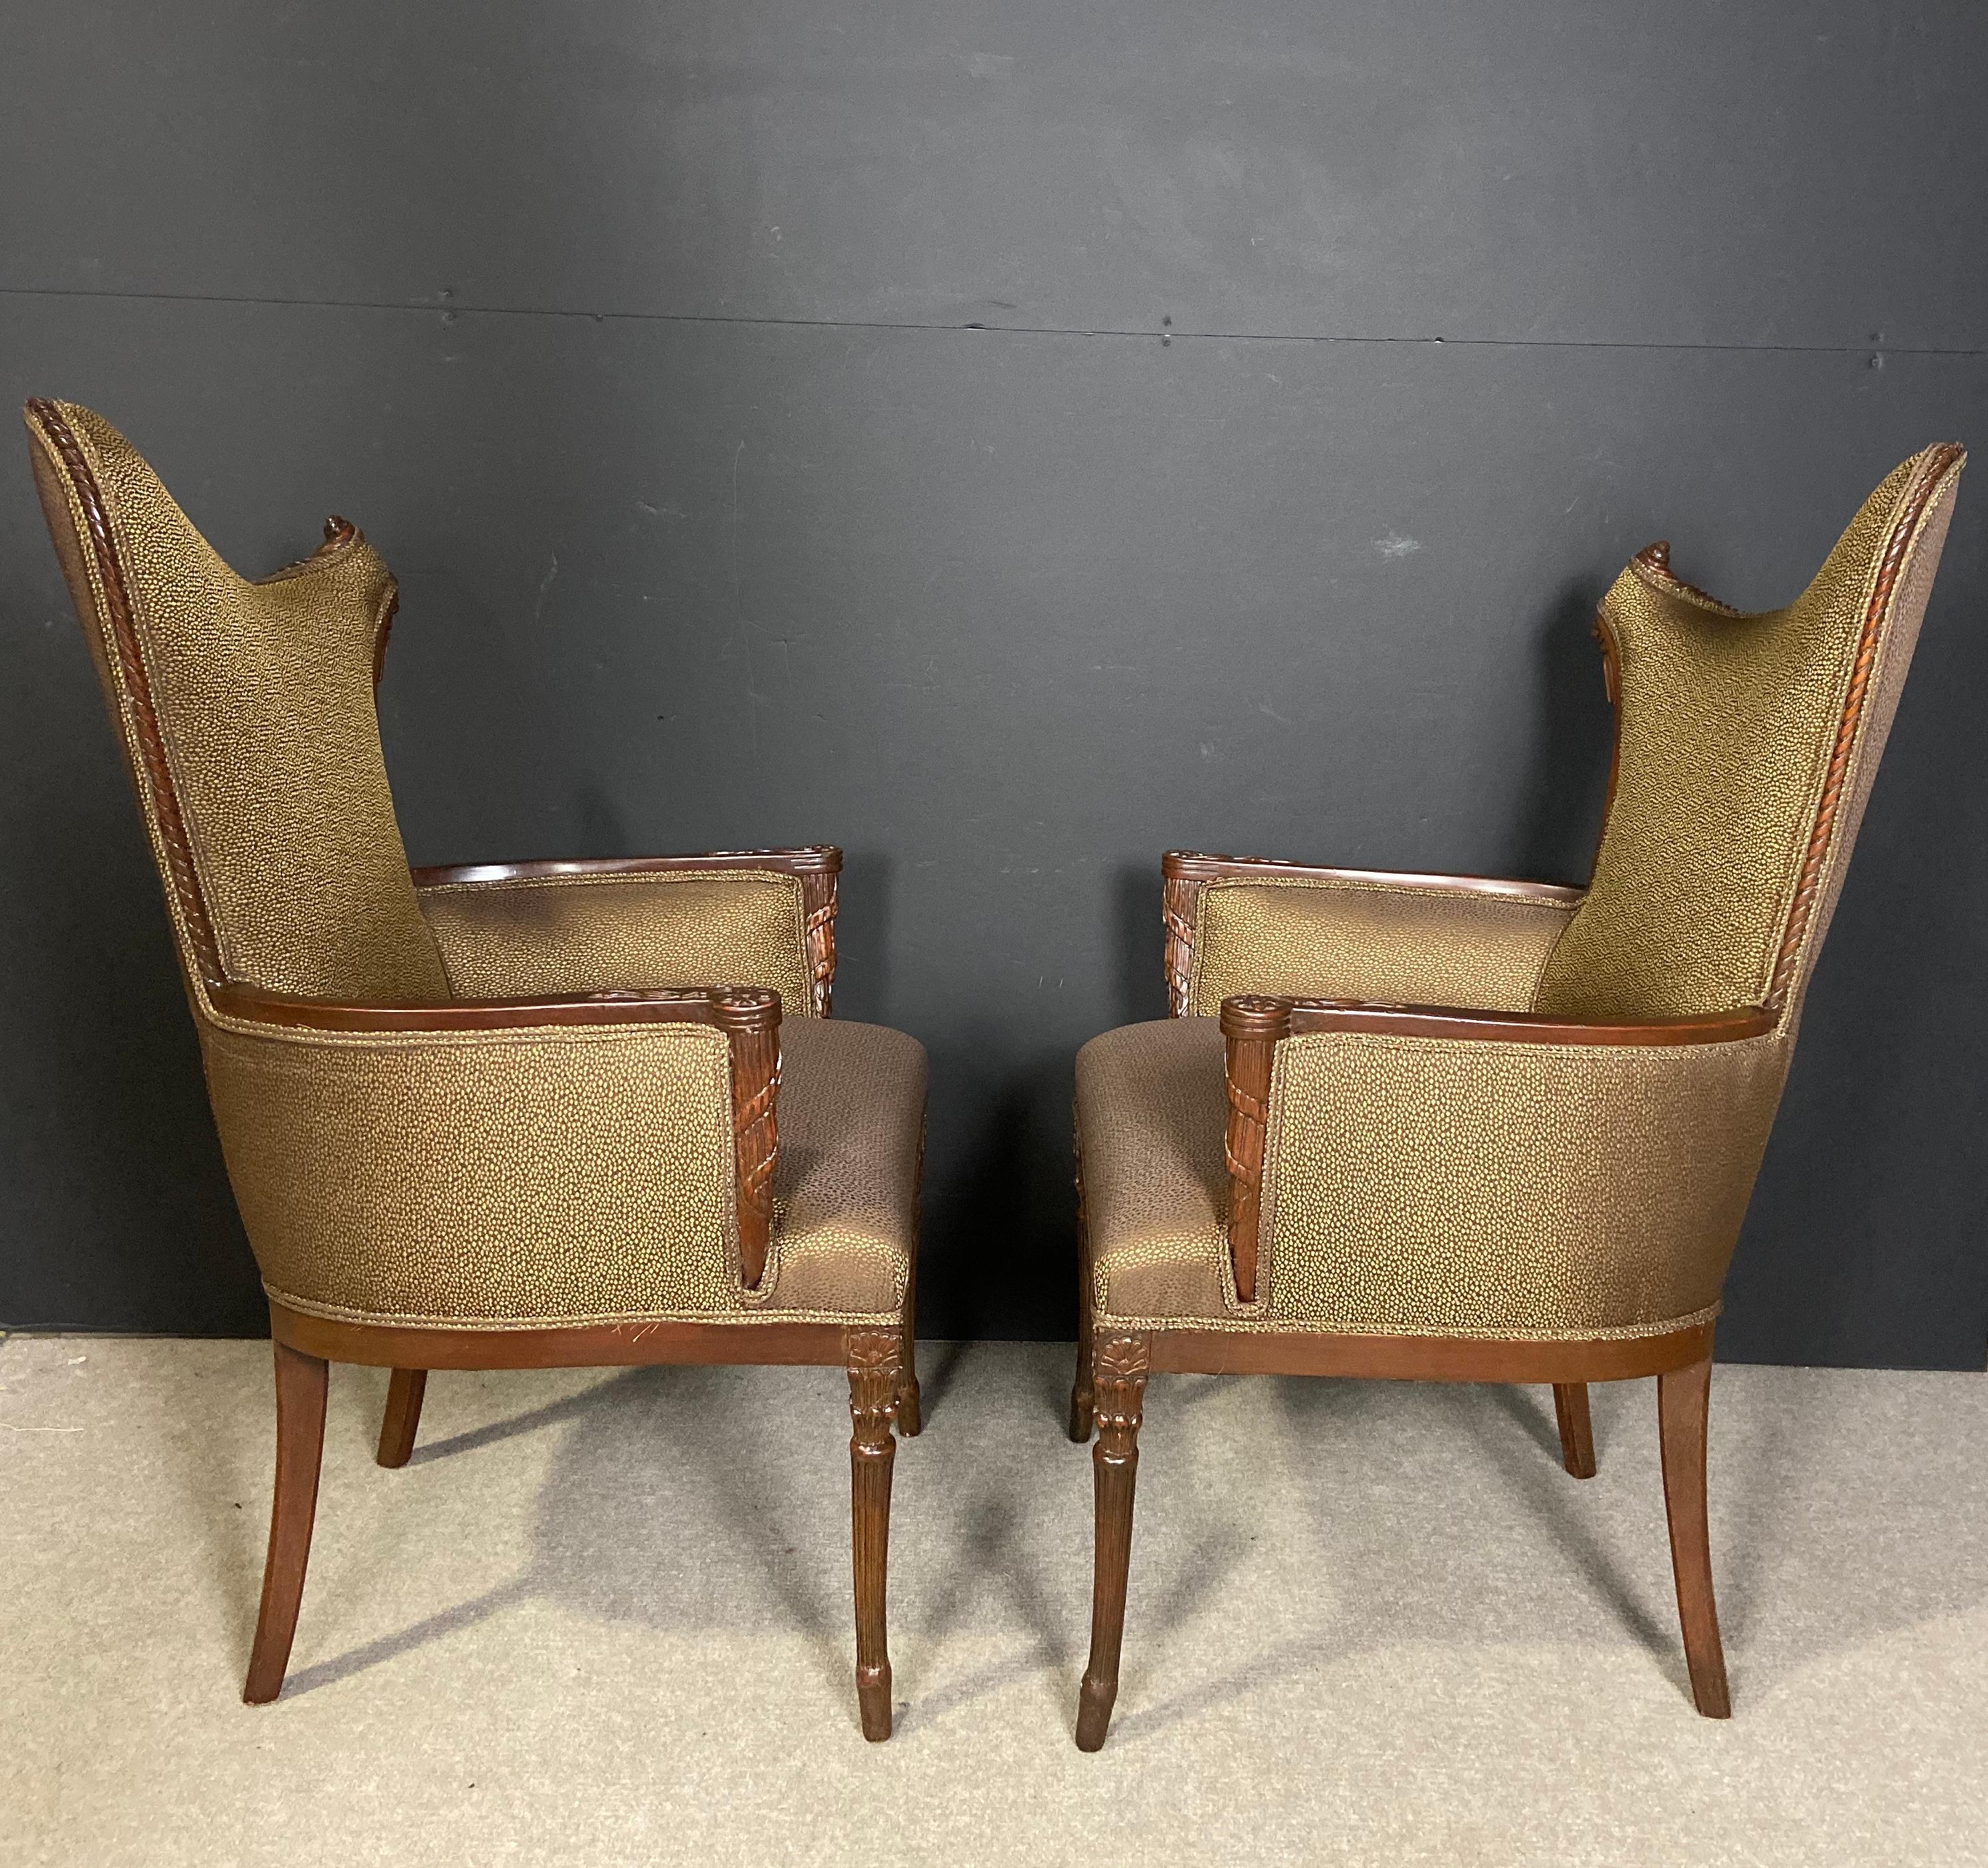 Paar ungewöhnliche Form Mitte des Jahrhunderts Hollywood Regency Hand geschnitzt links und rechts gegenüberliegende Seite Stühle / Sessel. Gepolstert mit einem wunderschönen goldfarbenen und braunen Stoff.